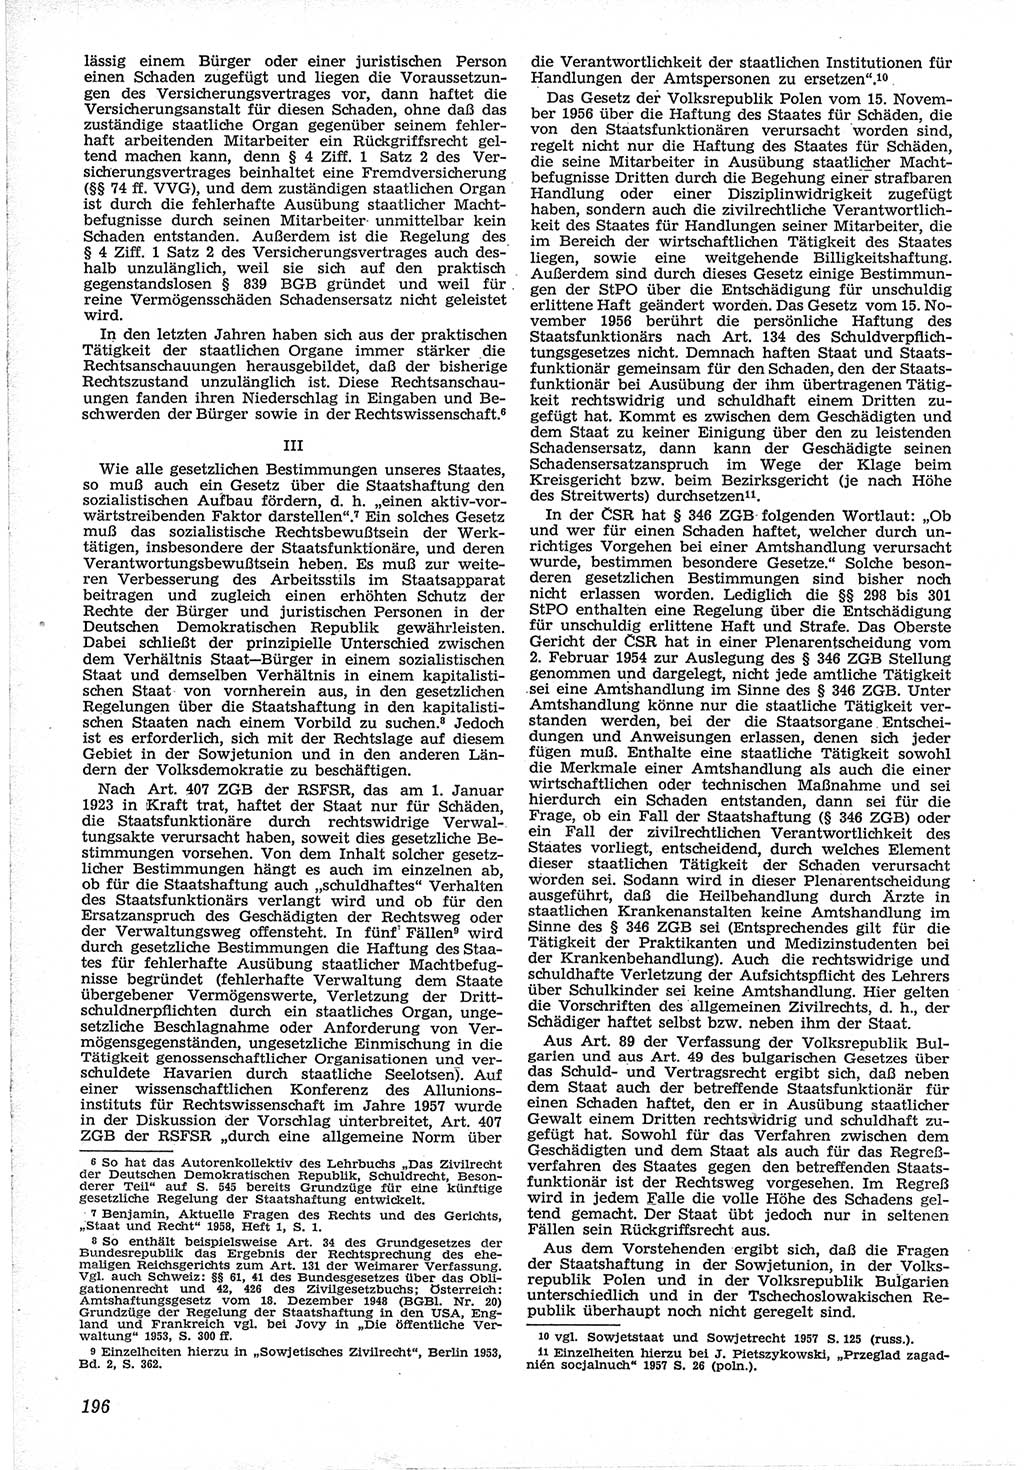 Neue Justiz (NJ), Zeitschrift für Recht und Rechtswissenschaft [Deutsche Demokratische Republik (DDR)], 12. Jahrgang 1958, Seite 196 (NJ DDR 1958, S. 196)